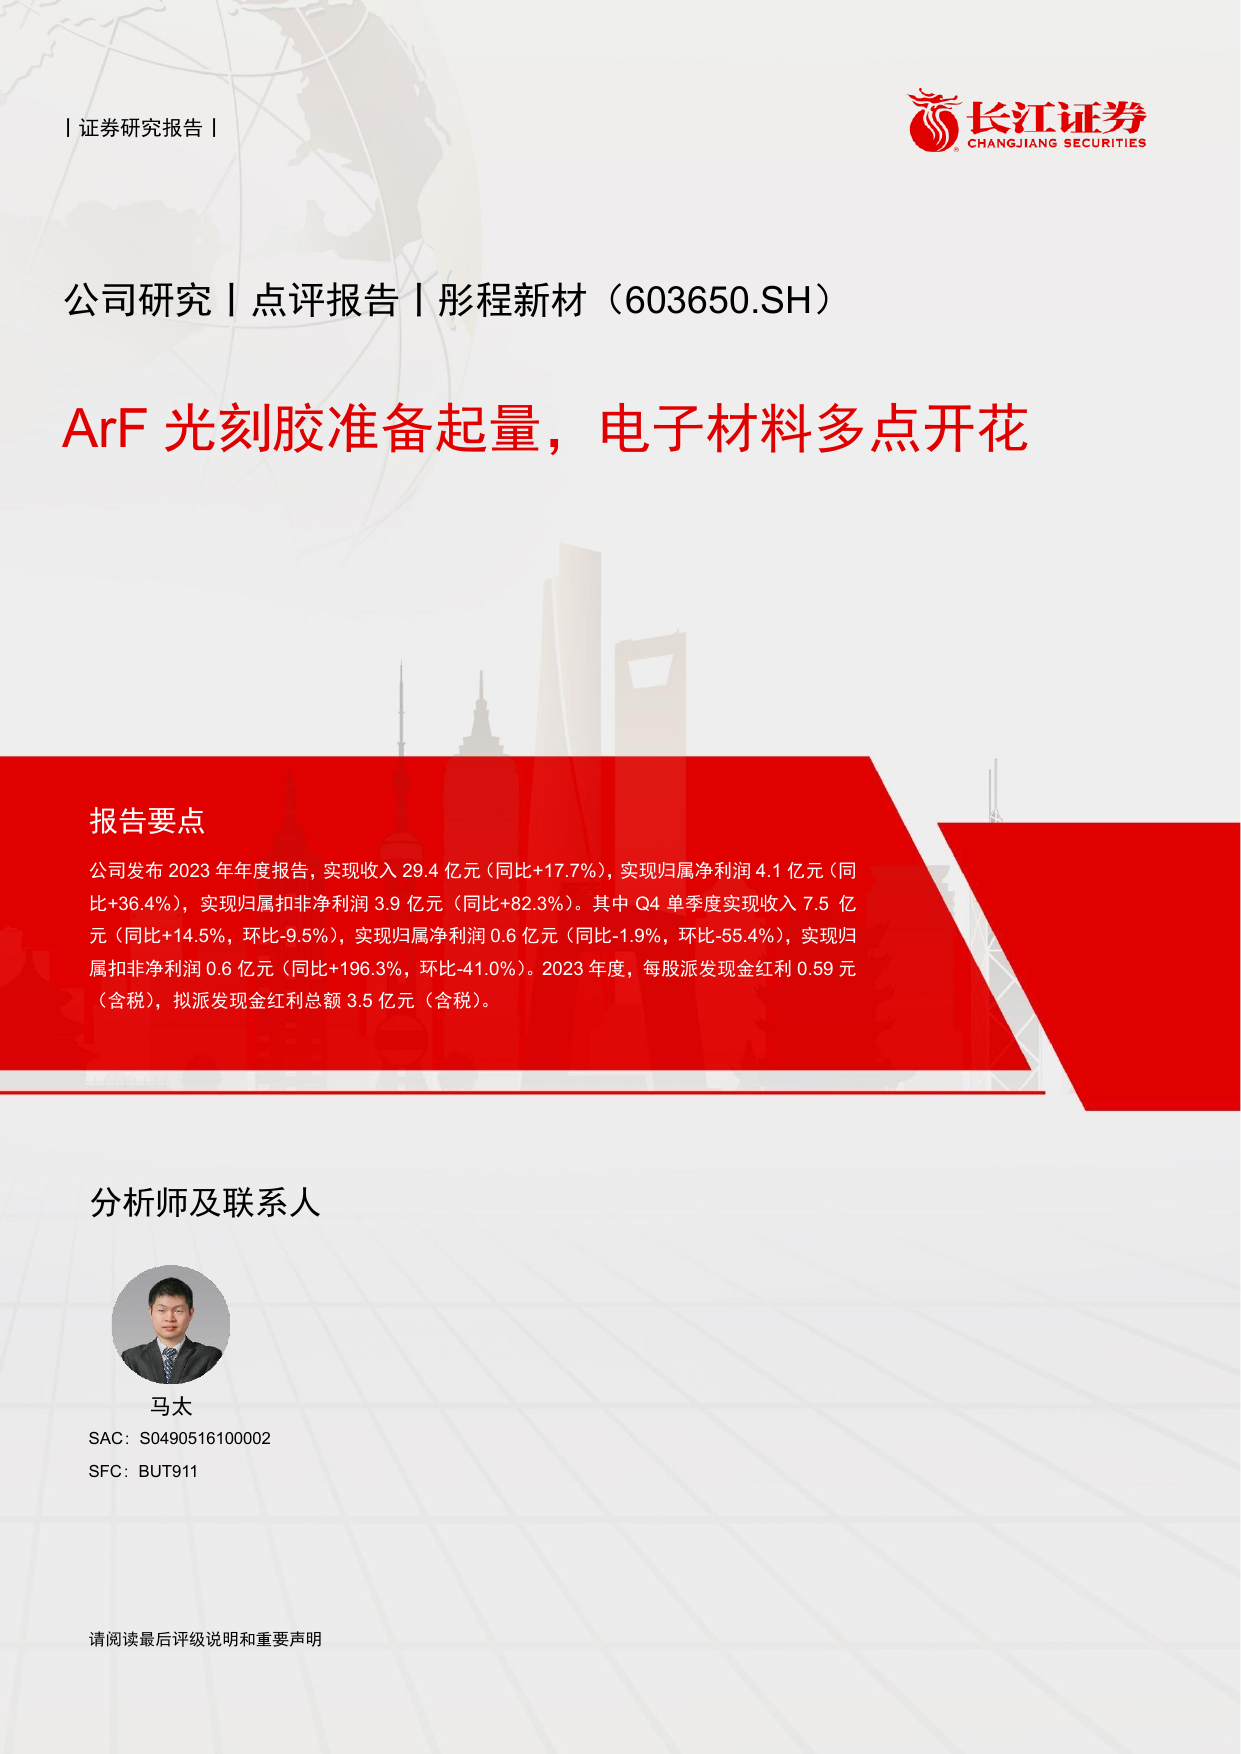 彤程新材(603650)ArF光刻胶准备起量，电子材料多点开花.pdf